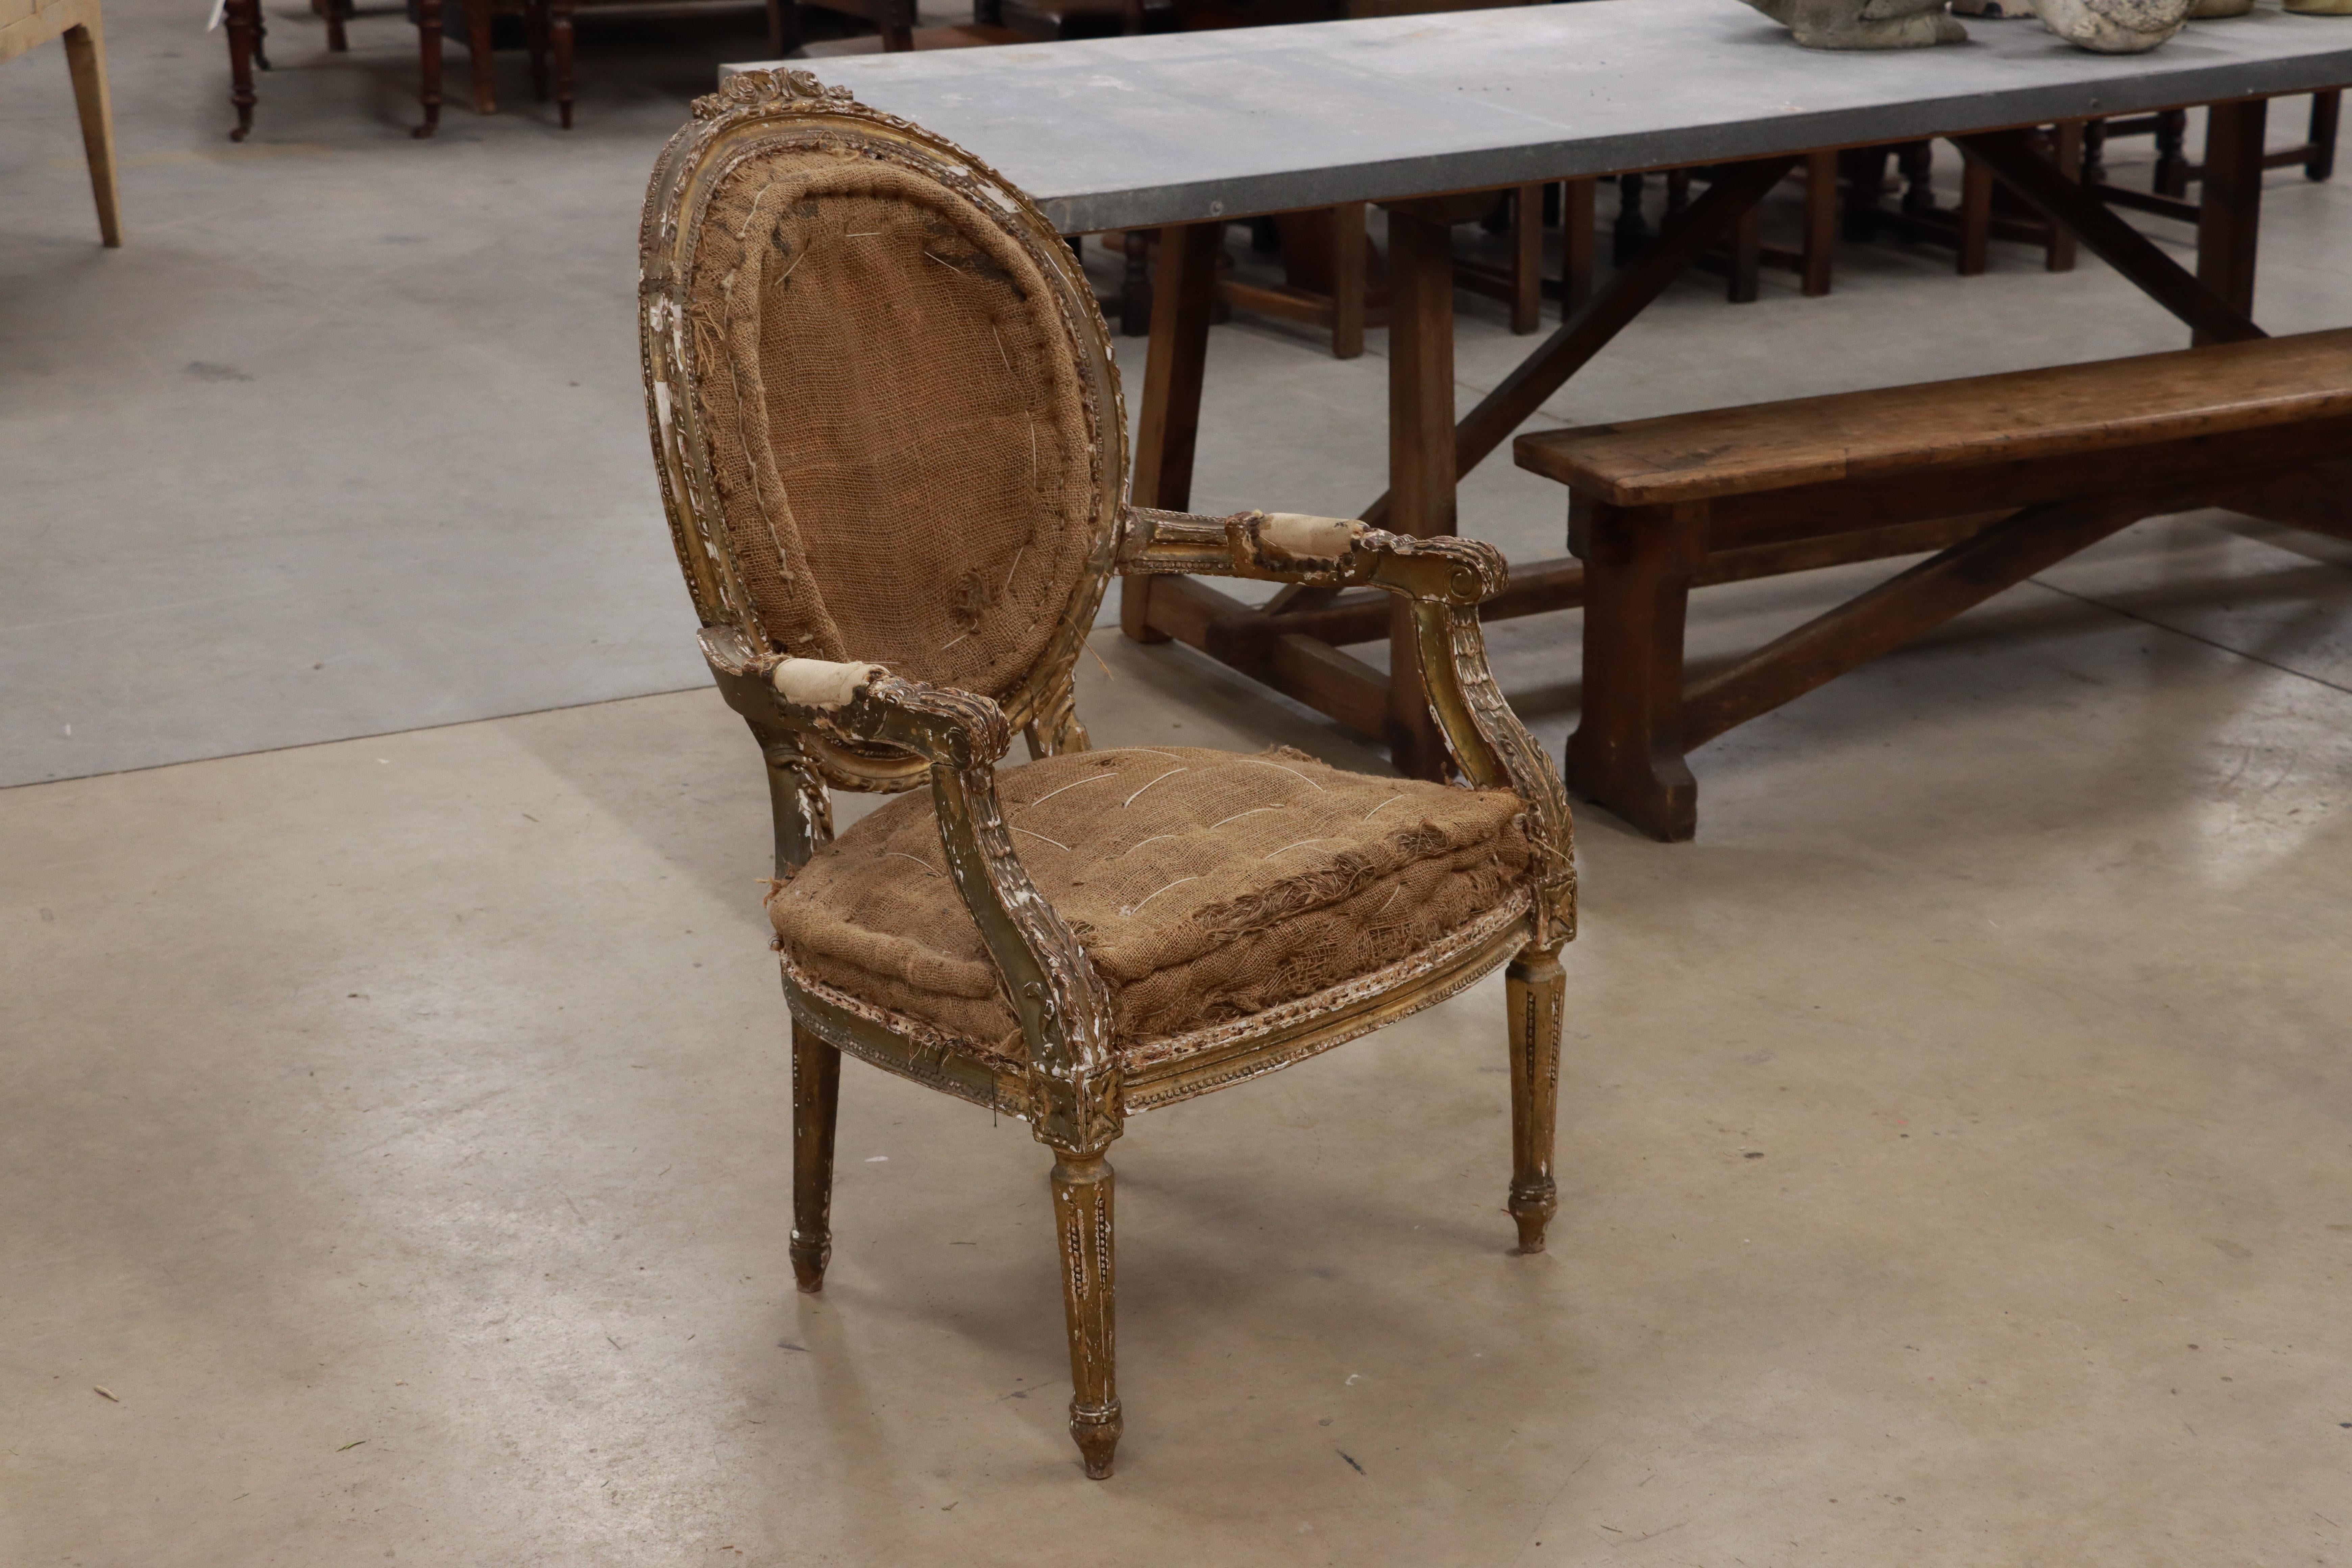 Französischer Fauteuil-Stuhl aus dem späten 18. Jahrhundert (Louis VXI). Er hat eine ovale Kamee-Rückseite mit einer Kartusche auf der Oberseite, mit nach unten gebogenen Armen und geriffelten Beinen. Es hat noch sichtbare Reste der ursprünglichen